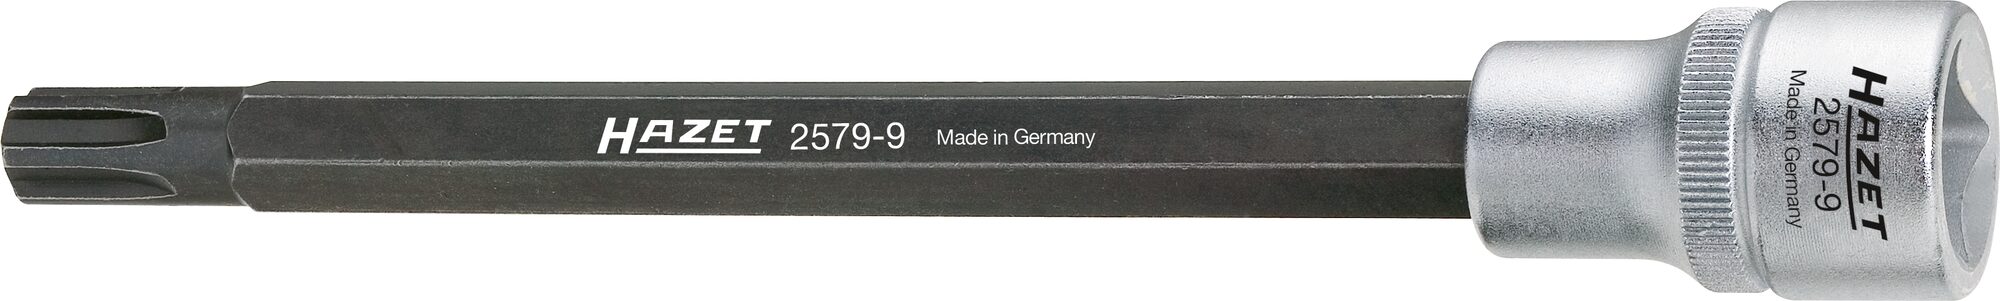 HAZET Zylinderkopf Schraubendreher-Steckschlüsseleinsatz 2579-9 · Vierkant hohl 12,5 mm (1/2 Zoll) · Polydrive Profil · 168 mm